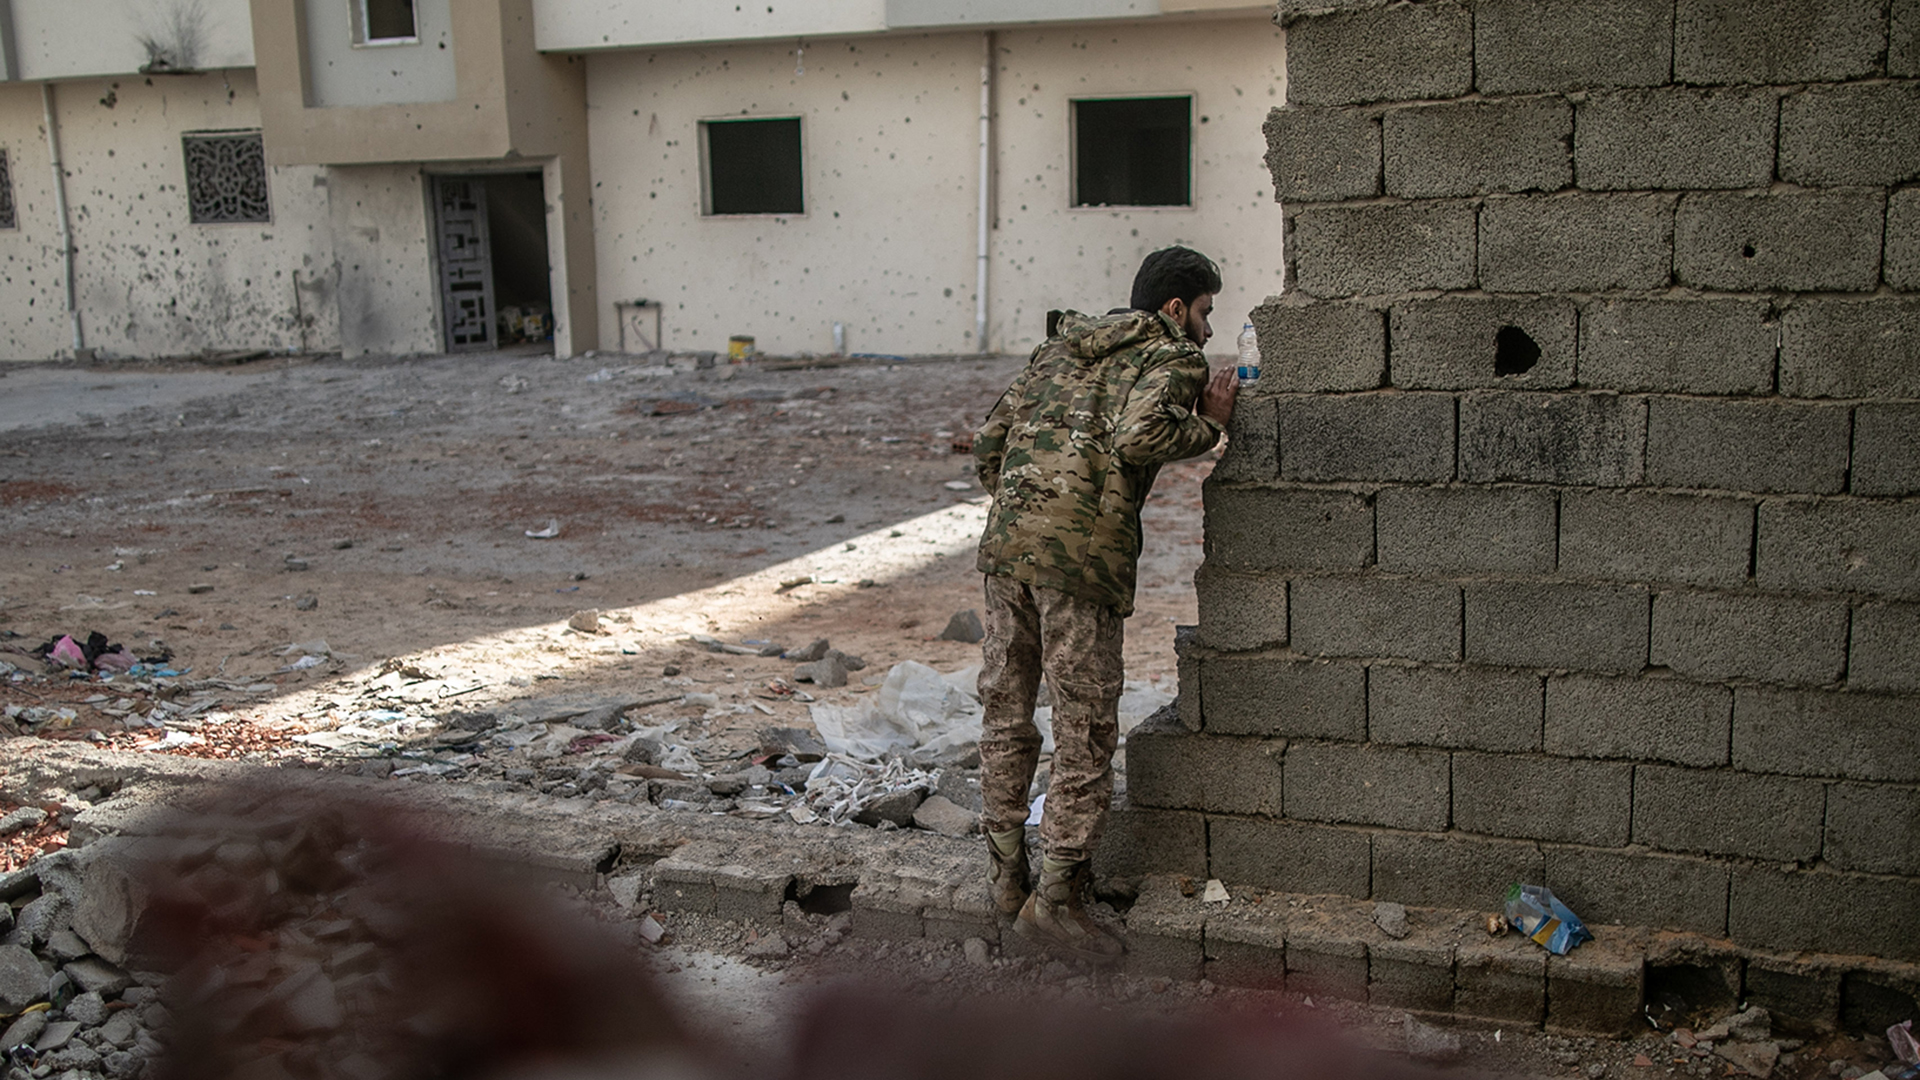 Ein Kämpfer der international anerkannten Regierung schaut während der Zusammenstöße mit den Truppen der Libysch-Nationalen Armee (LNA) um eine Mauer. | dpa